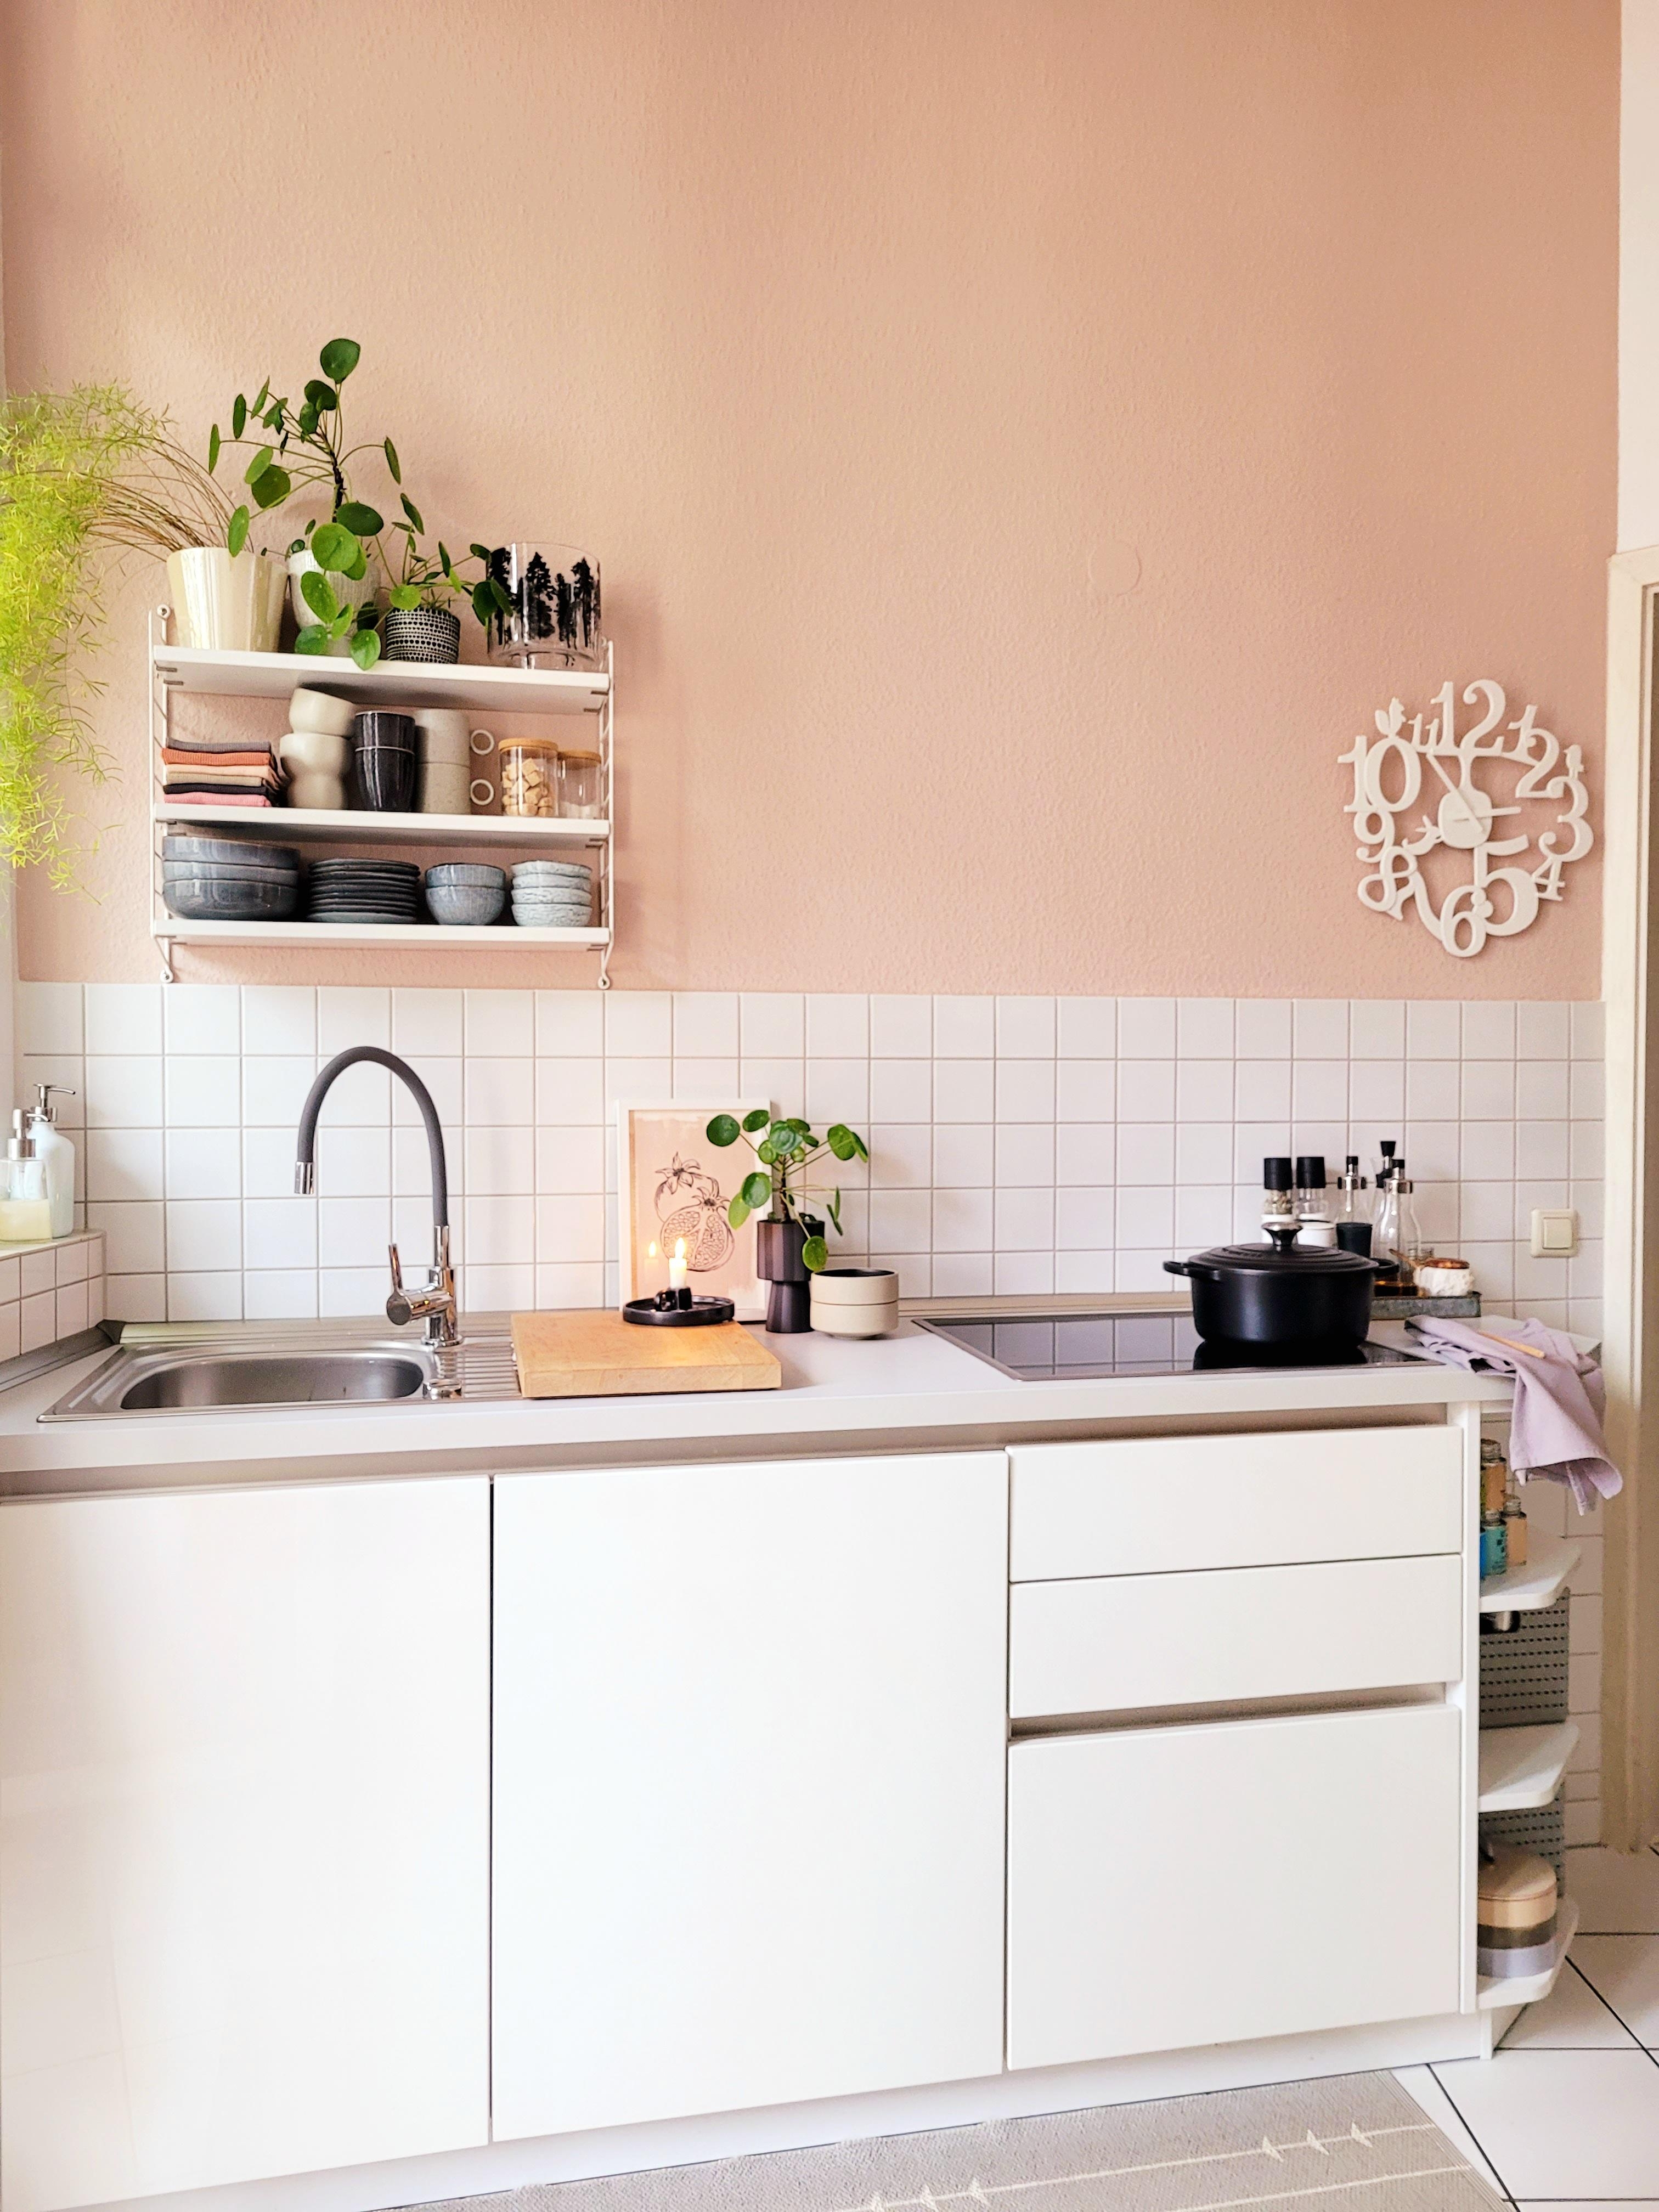 Kücheneinblick 
#Altbau 
#kitchen
#Pastellfarben 
#weisseküche 
#Keramik 
#stringregal 
